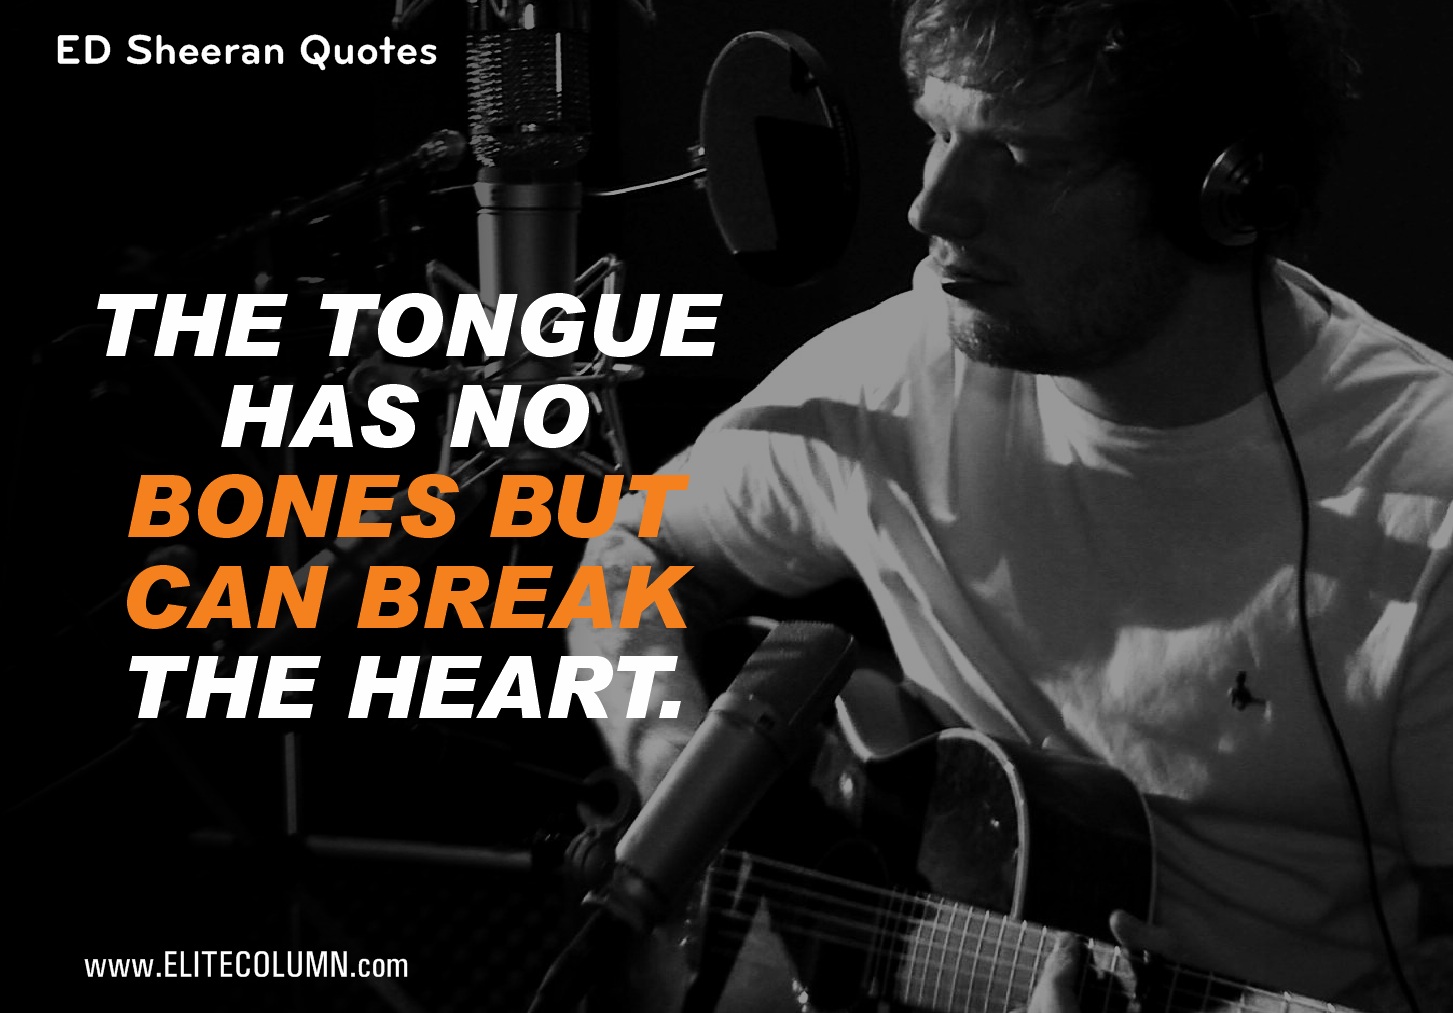 Ed Sheeran Quotes (7)